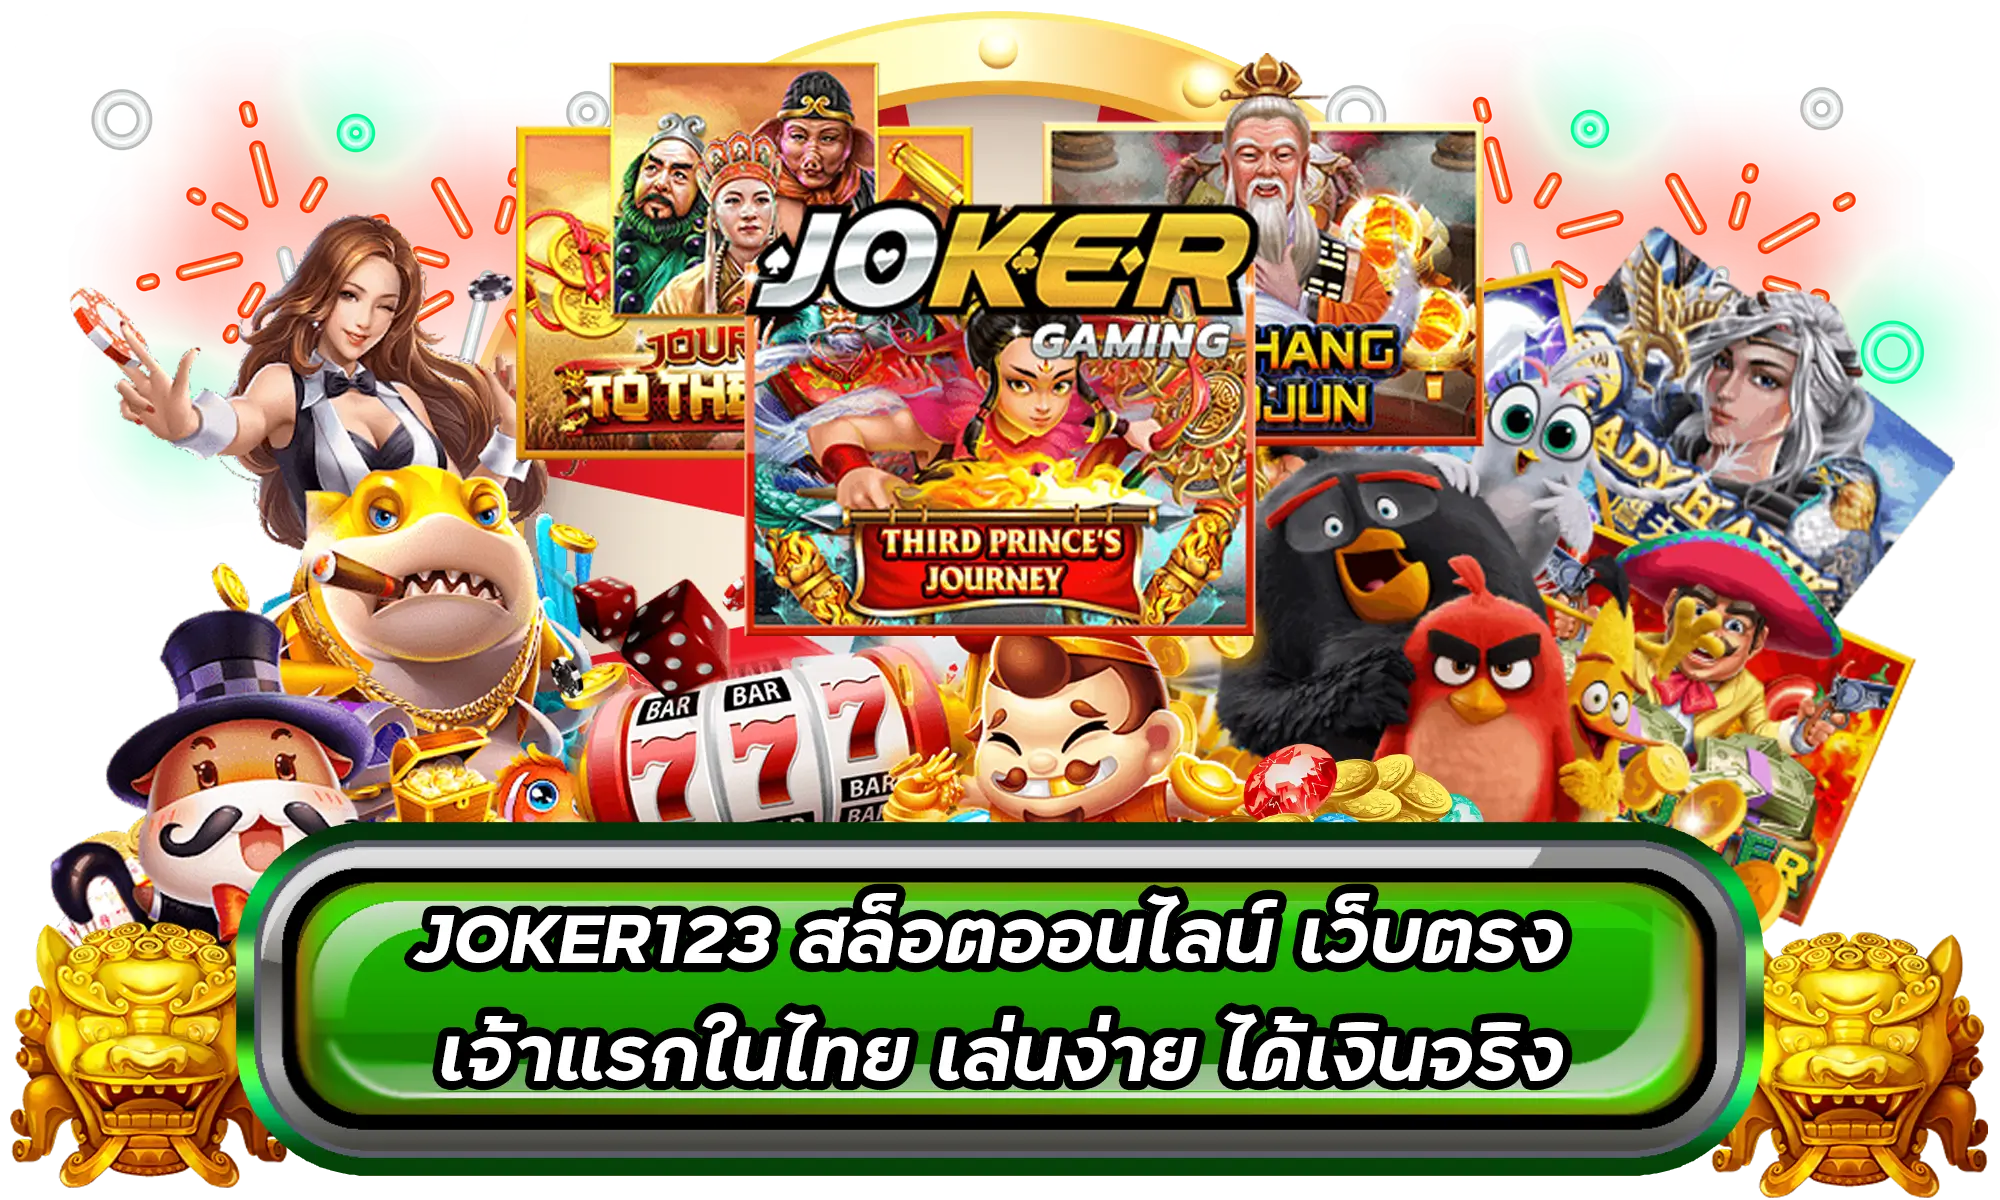 JOKER123 สล็อตออนไลน์ เว็บตรง เจ้าแรกในไทย เล่นง่าย ได้เงินจริง